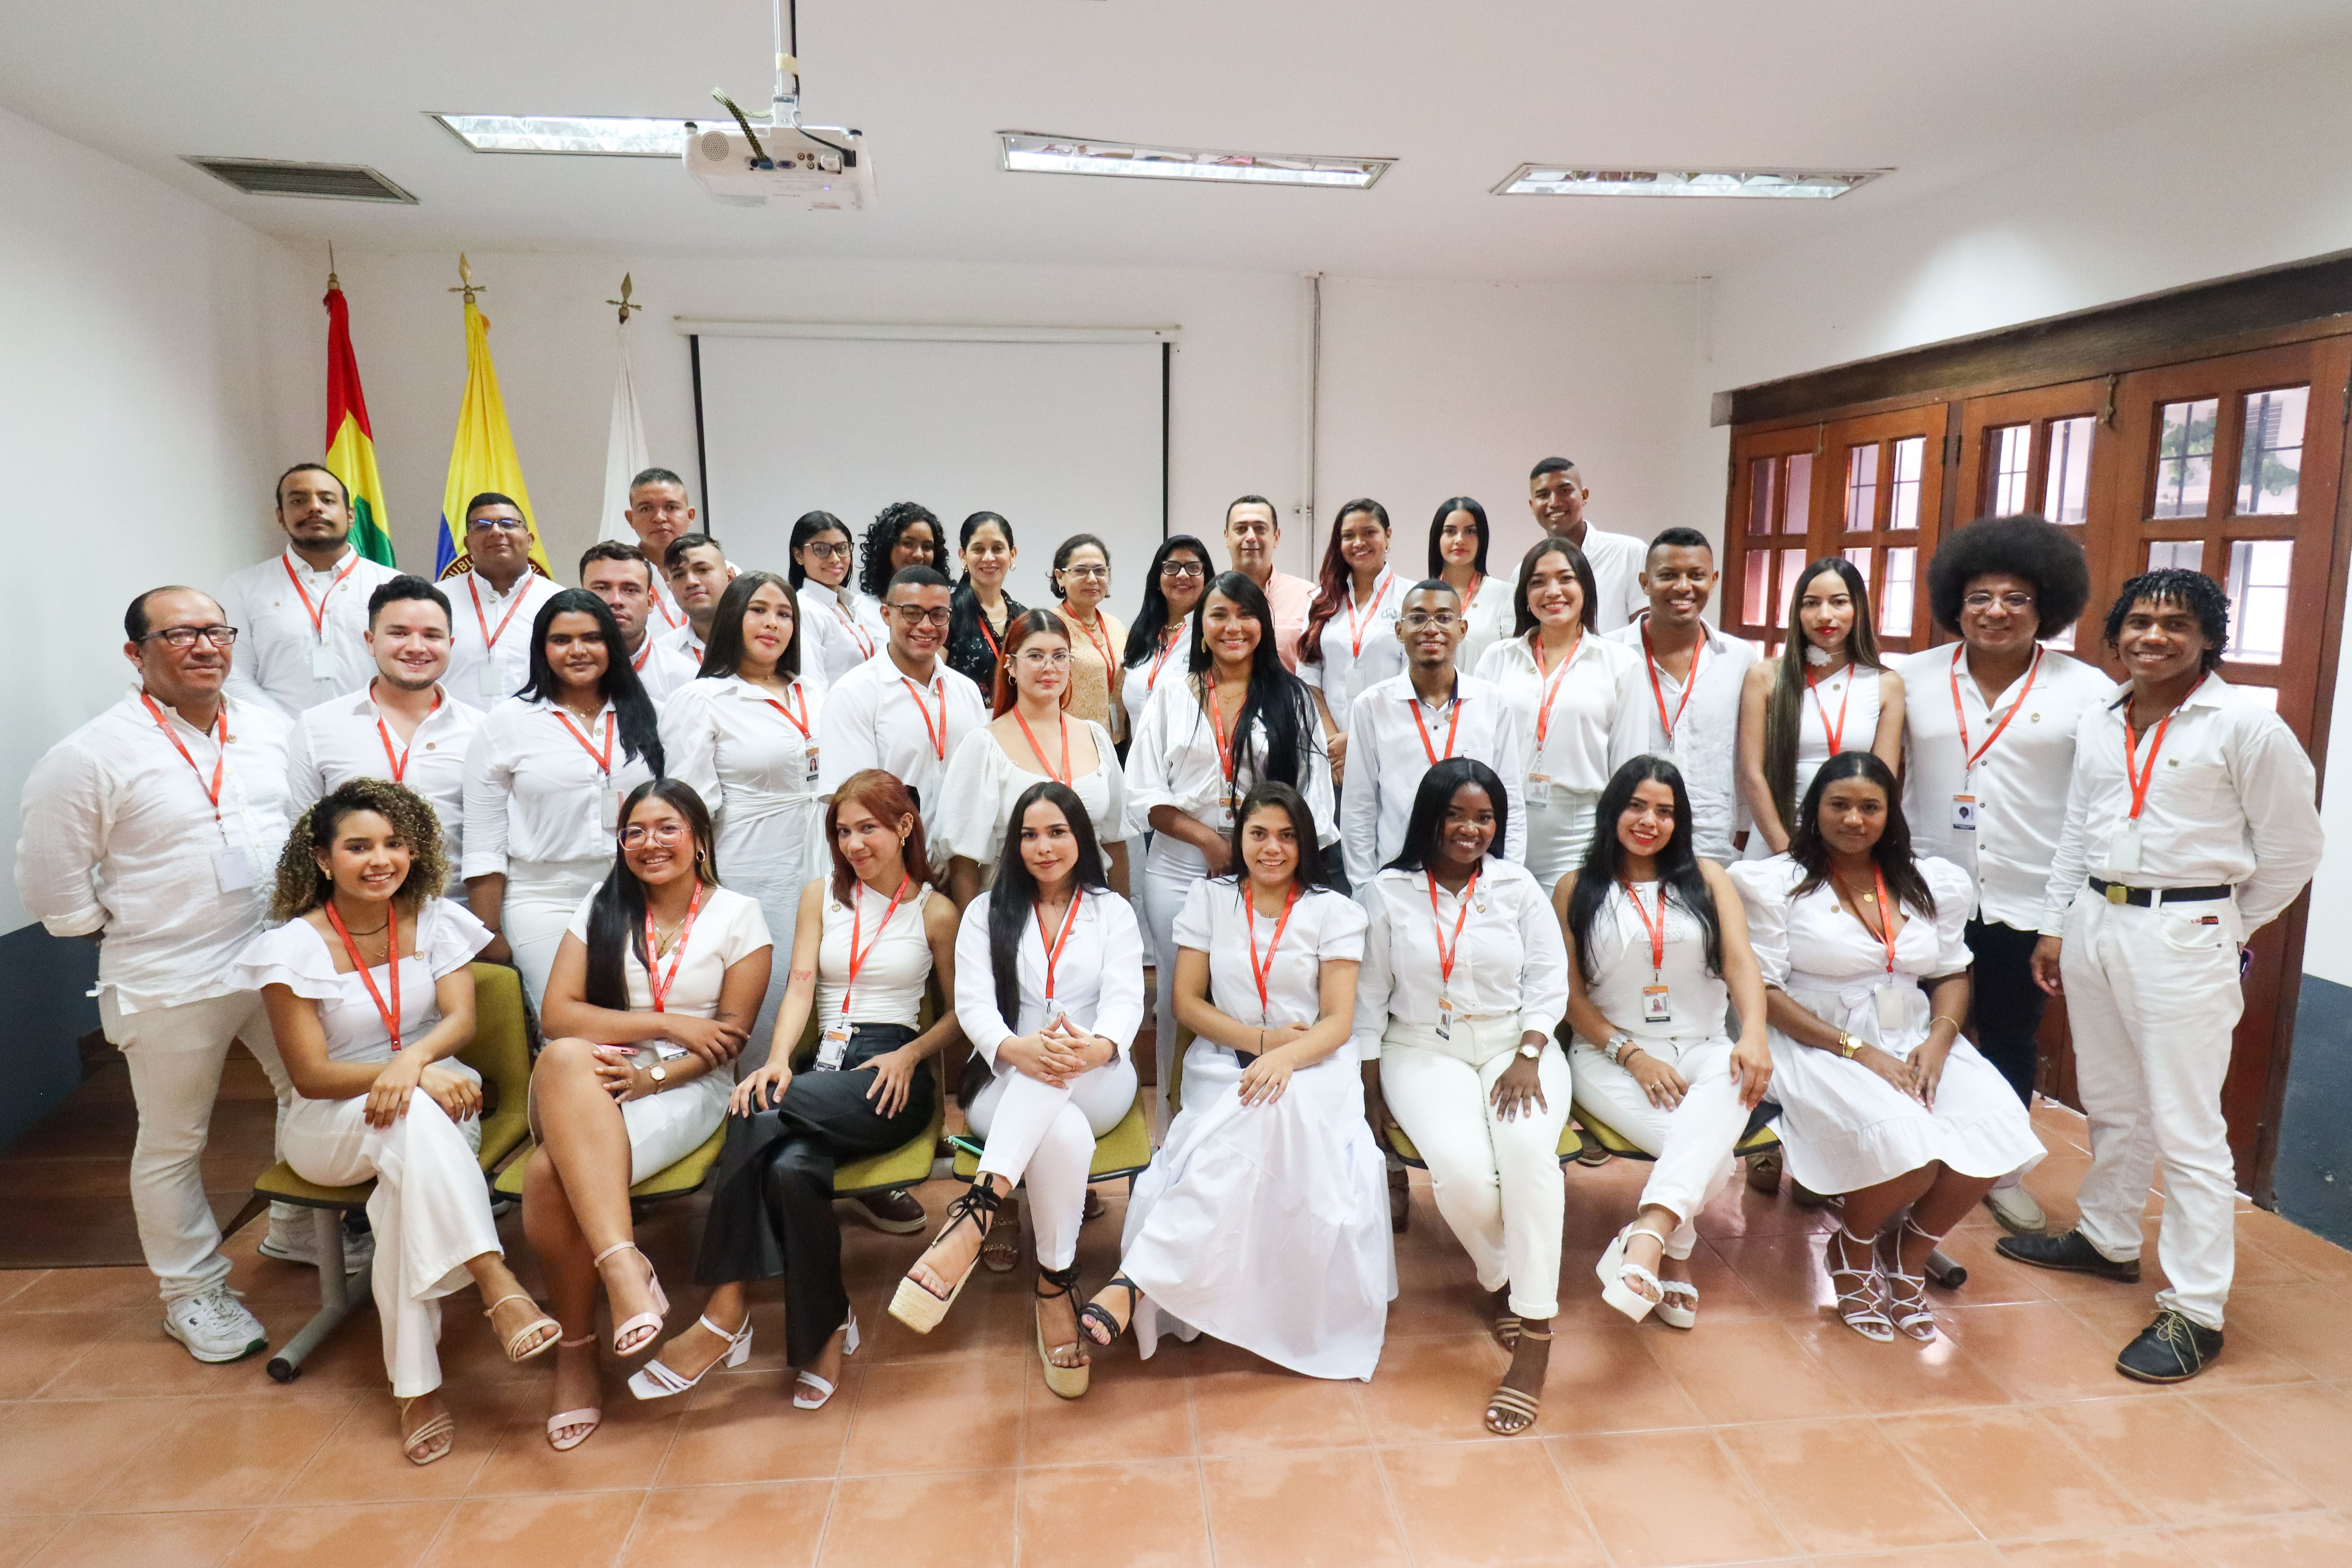 Se llevó a cabo Ceremonia de Toma de Juramento de Práctica Formativa en el Consultorio Jurídico y Centro de Conciliación Cartagena